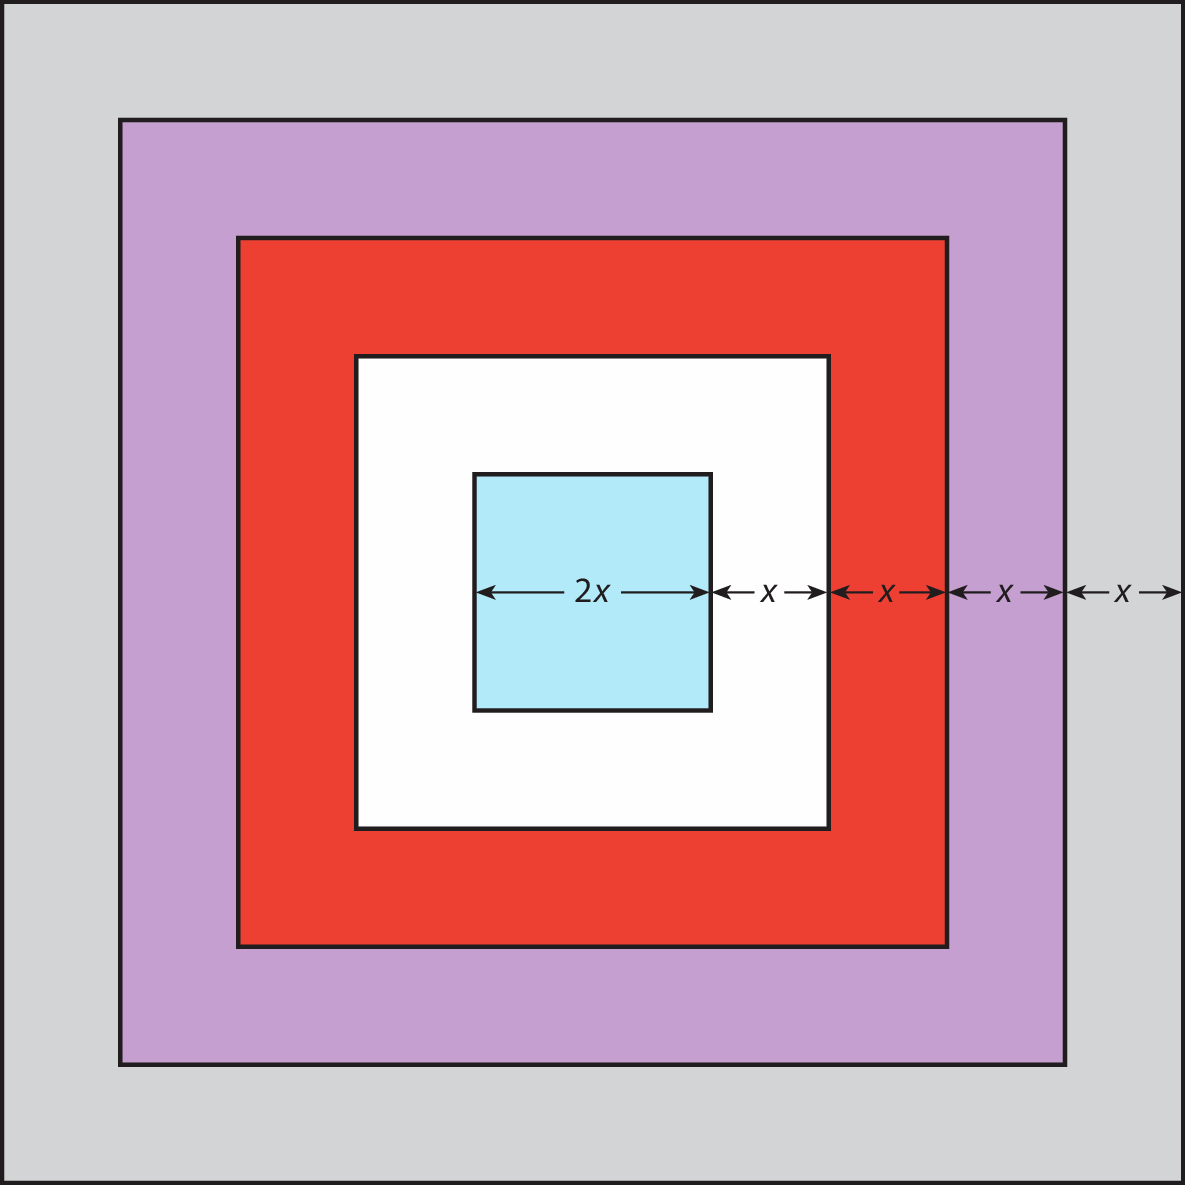 Ilustração. Cinco quadrados, um dentro do outro de maneira que o centro deles coincidem. Primeiro quadrado. Cor azul: lado mede 2 x. Segundo quadrado. Cor branca: medida x é acrescentada à direita do quadrado azul. Terceiro quadrado. Cor vermelha: medida x é acrescentada à direita do quadrado branco. Quarto quadrado. Cor roxa: medida x é acrescentada à direita do quadrado vermelho. Quinto quadrado. Cor cinza: medida x é acrescentada à direita do quadrado roxo.